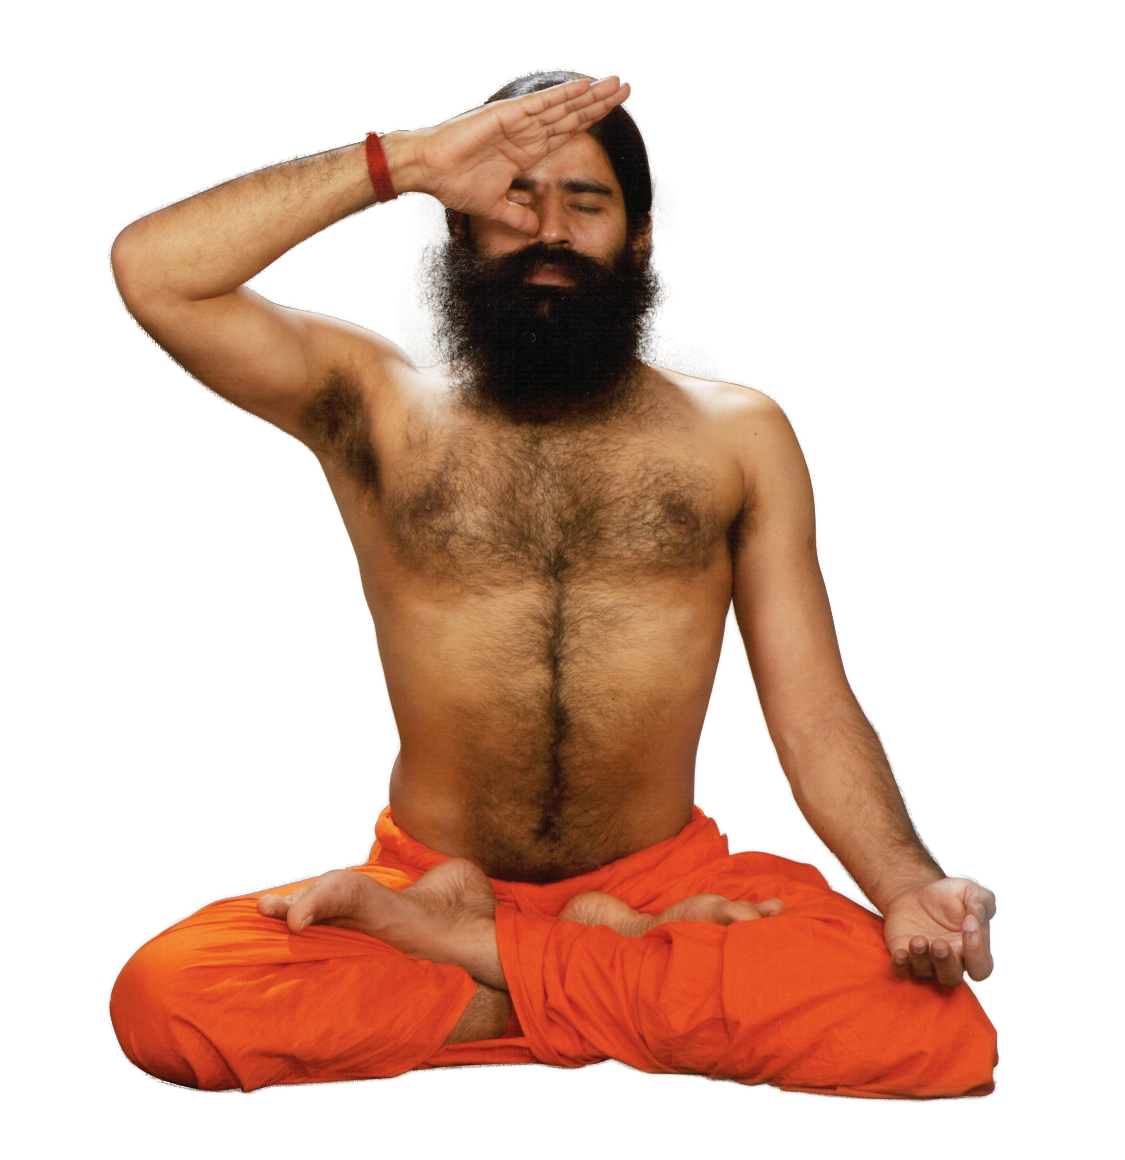 pranayama yoga